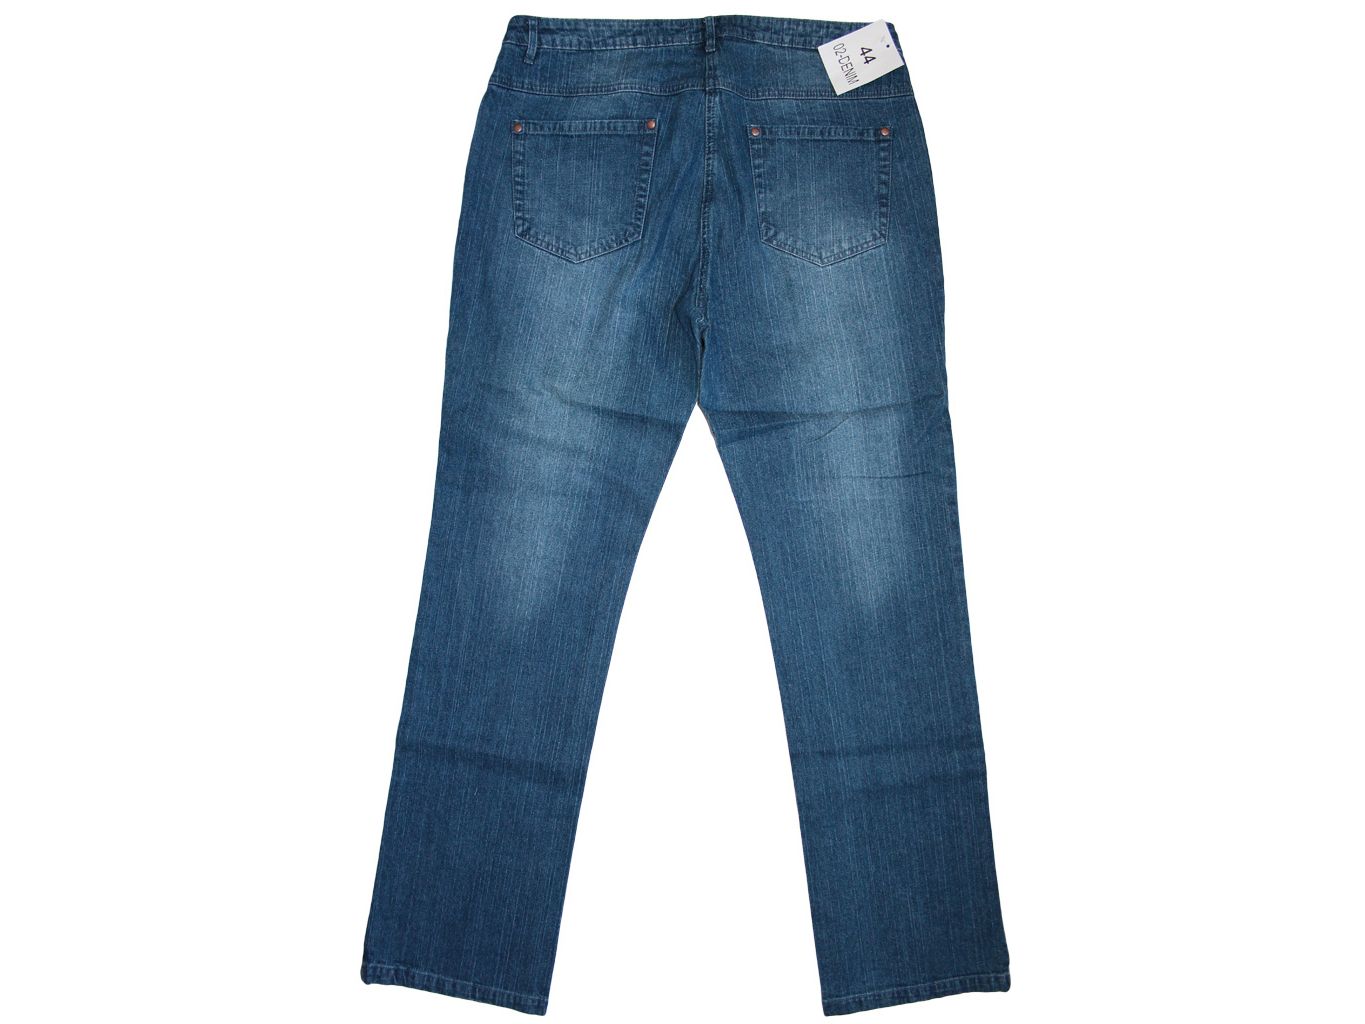 Женские джинсы с вышивкой : купить джинсы с вышивкой недорого на Клубок (ранее Клумба)